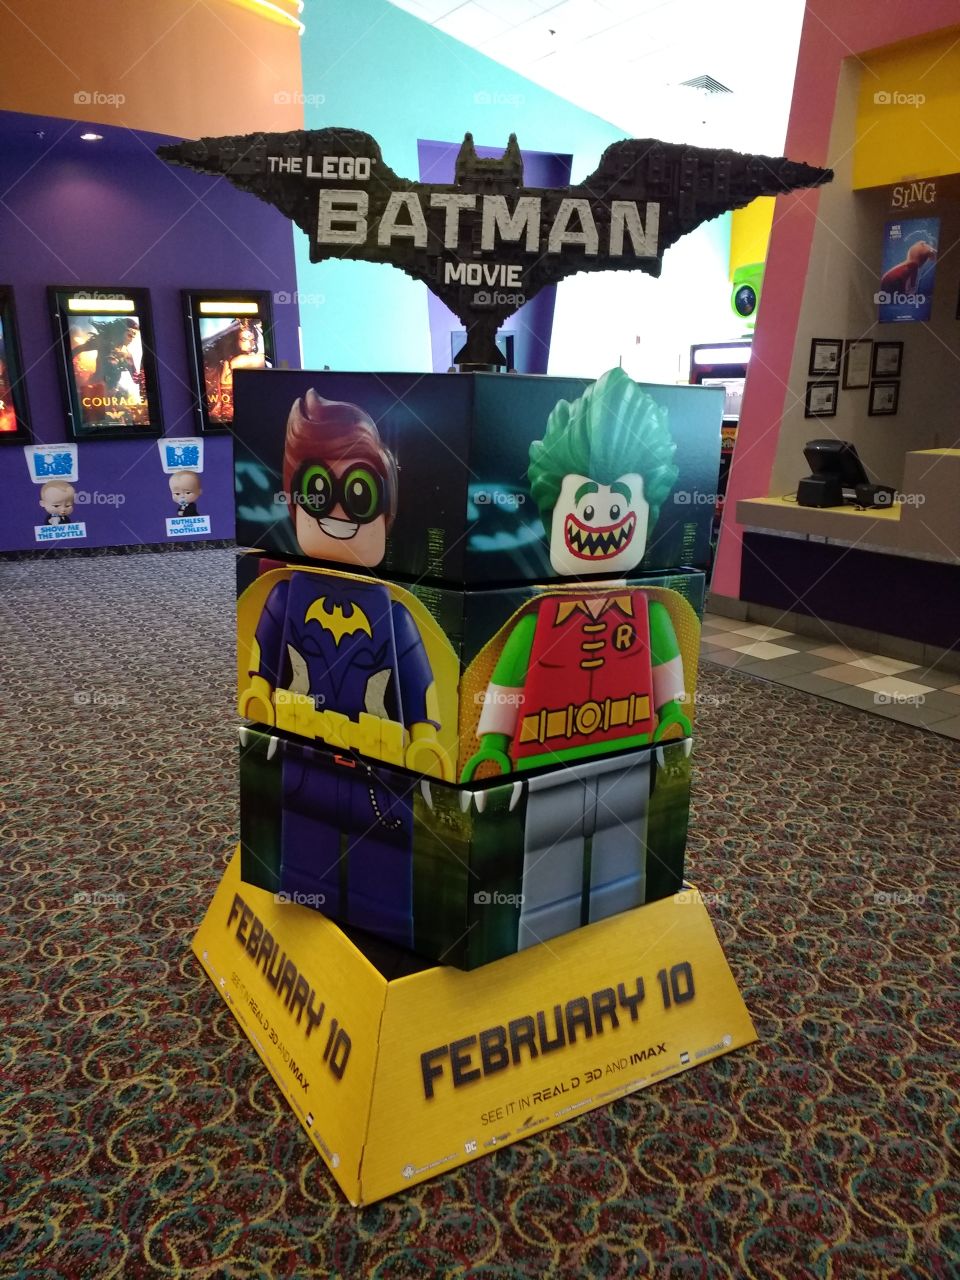 Lego Batman Movie display